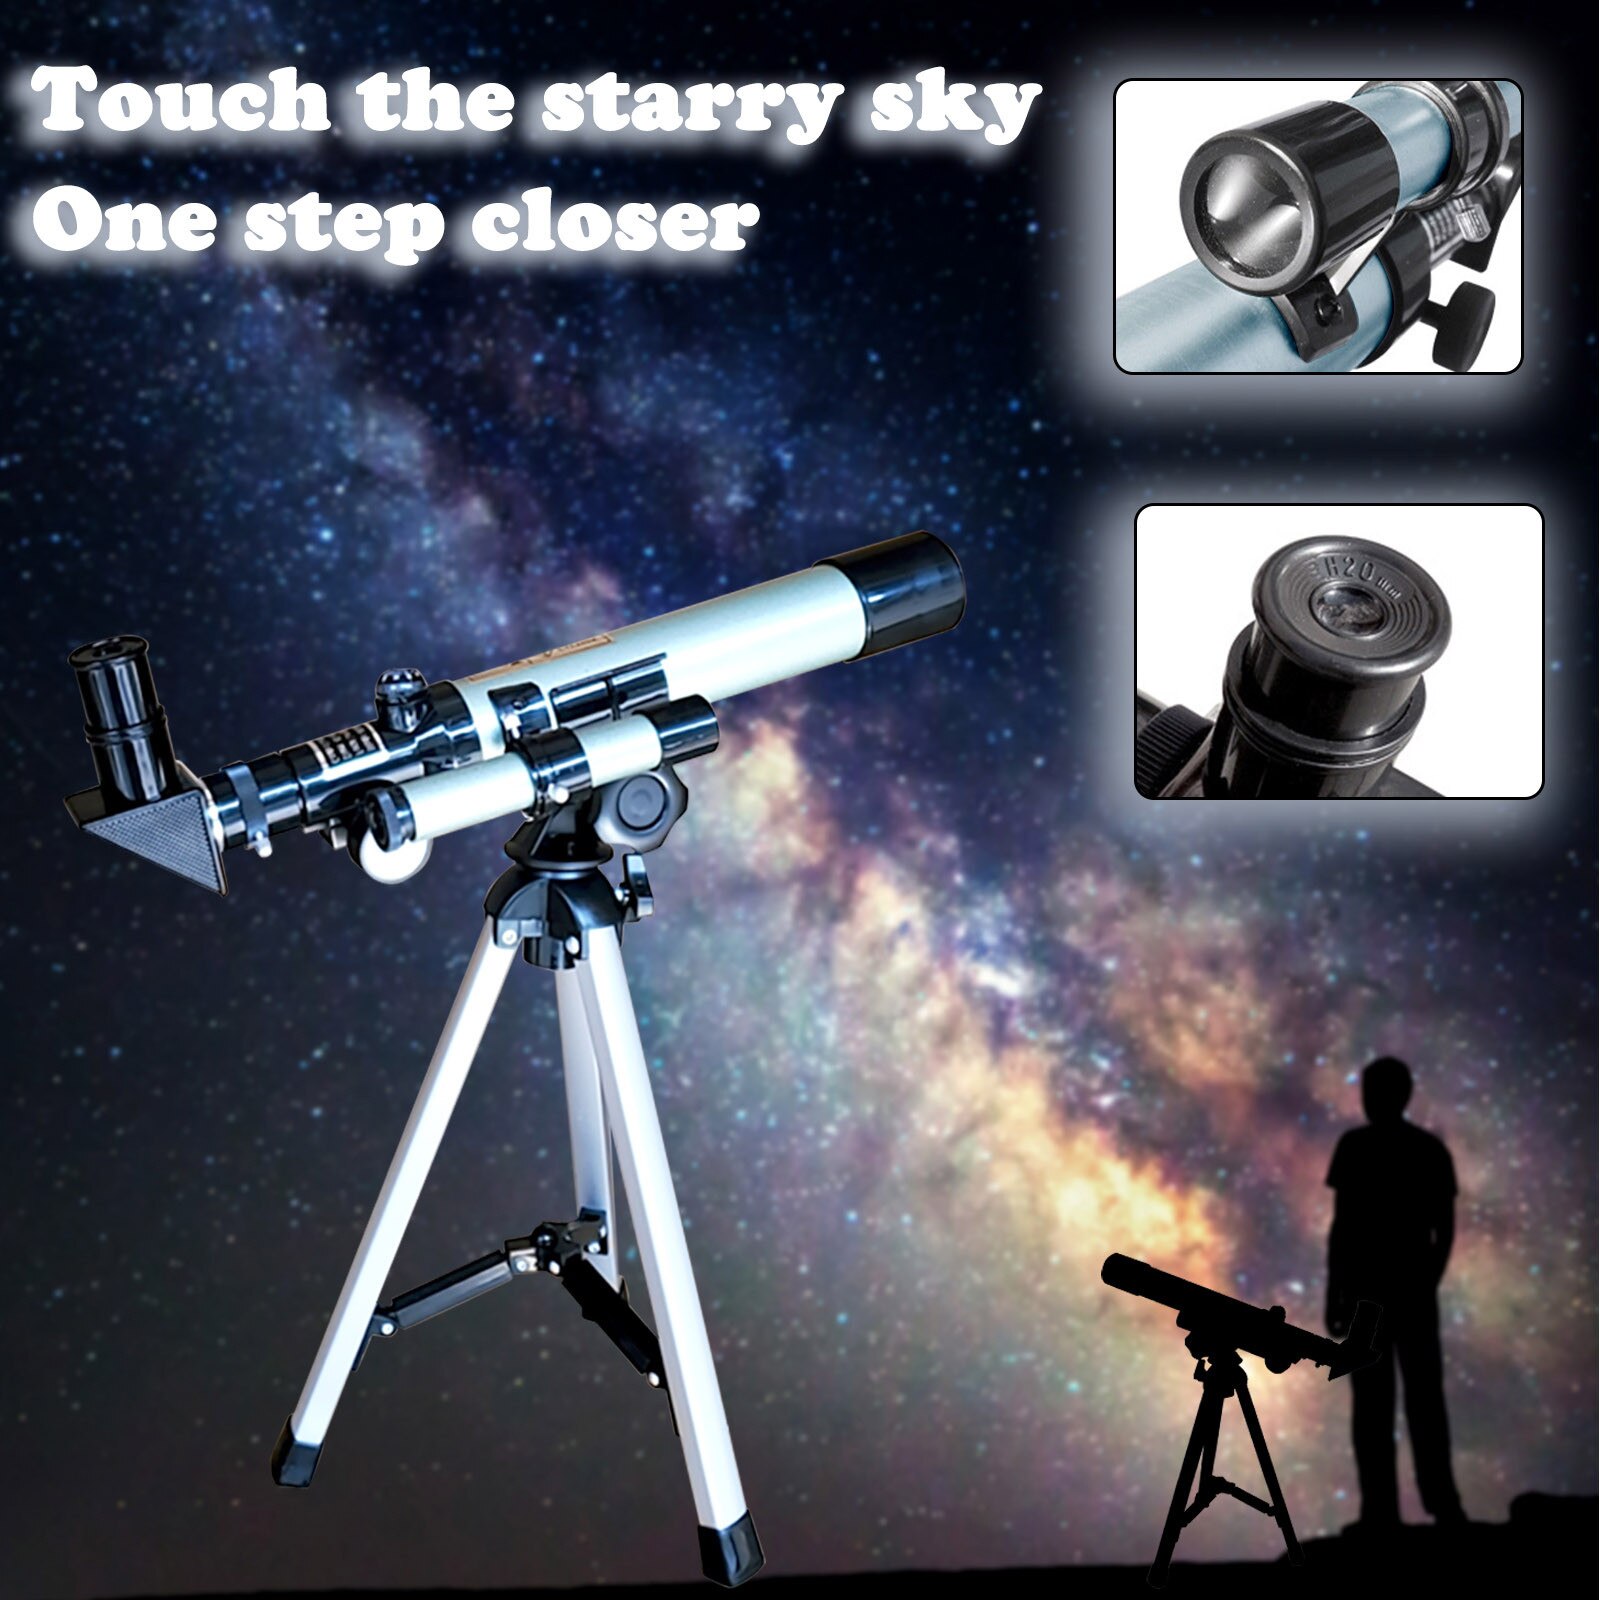 40 # F40040 Telescoop Astronomische Professionele Student Astronomische Telescoop Professionele Hd Ster Zoeken Kind Volwassen